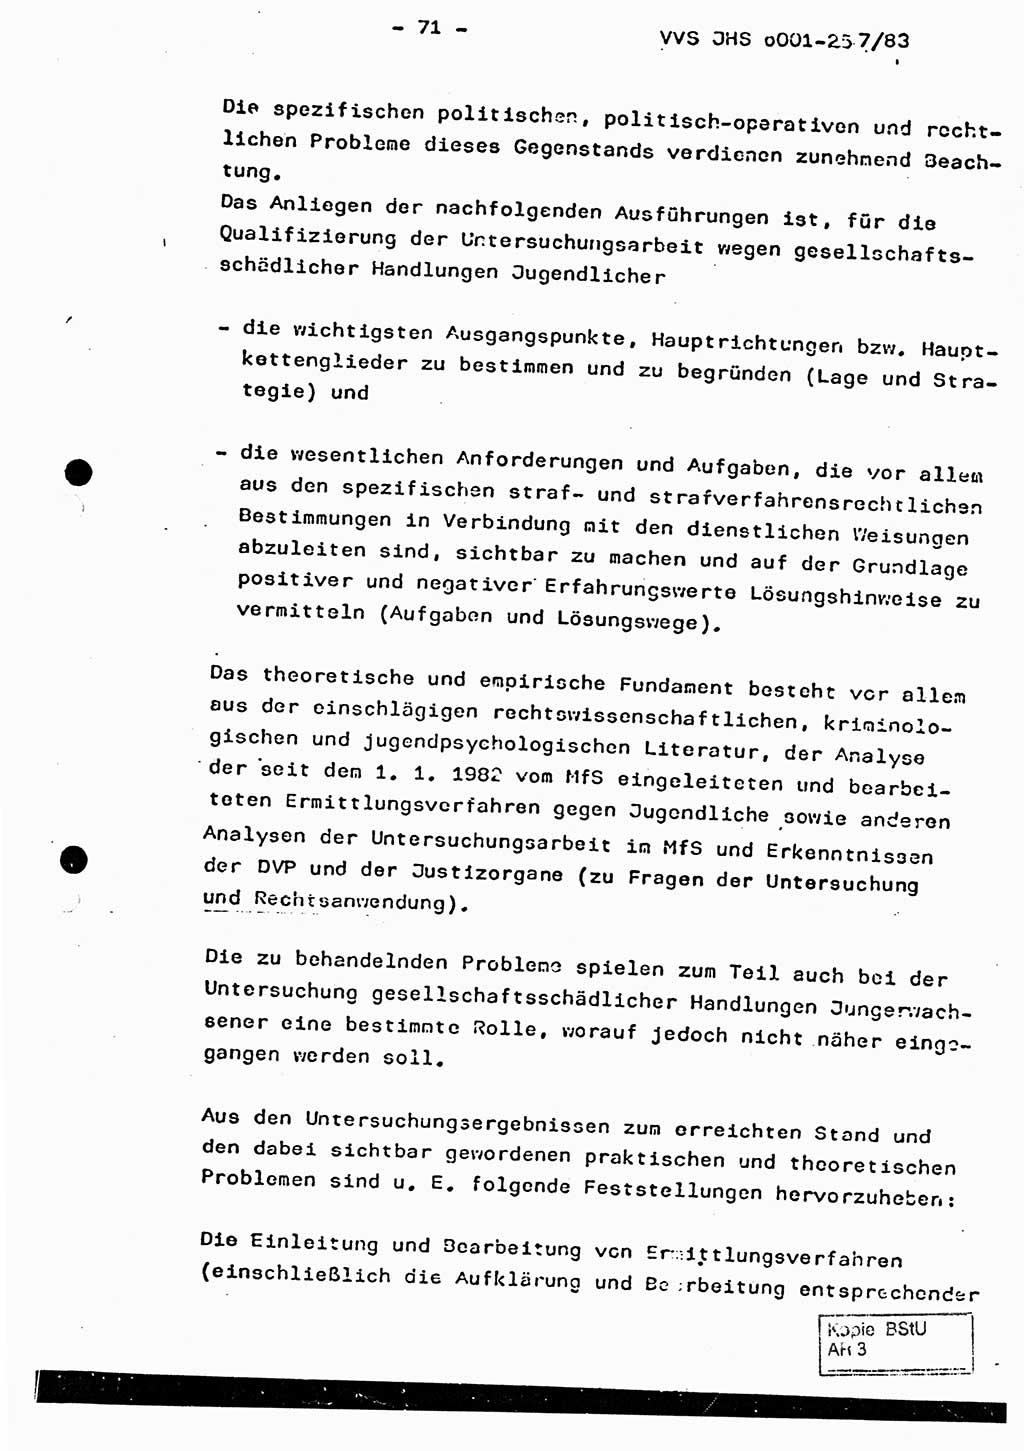 Dissertation, Oberst Helmut Lubas (BV Mdg.), Oberstleutnant Manfred Eschberger (HA IX), Oberleutnant Hans-Jürgen Ludwig (JHS), Ministerium für Staatssicherheit (MfS) [Deutsche Demokratische Republik (DDR)], Juristische Hochschule (JHS), Vertrauliche Verschlußsache (VVS) o001-257/83, Potsdam 1983, Seite 71 (Diss. MfS DDR JHS VVS o001-257/83 1983, S. 71)